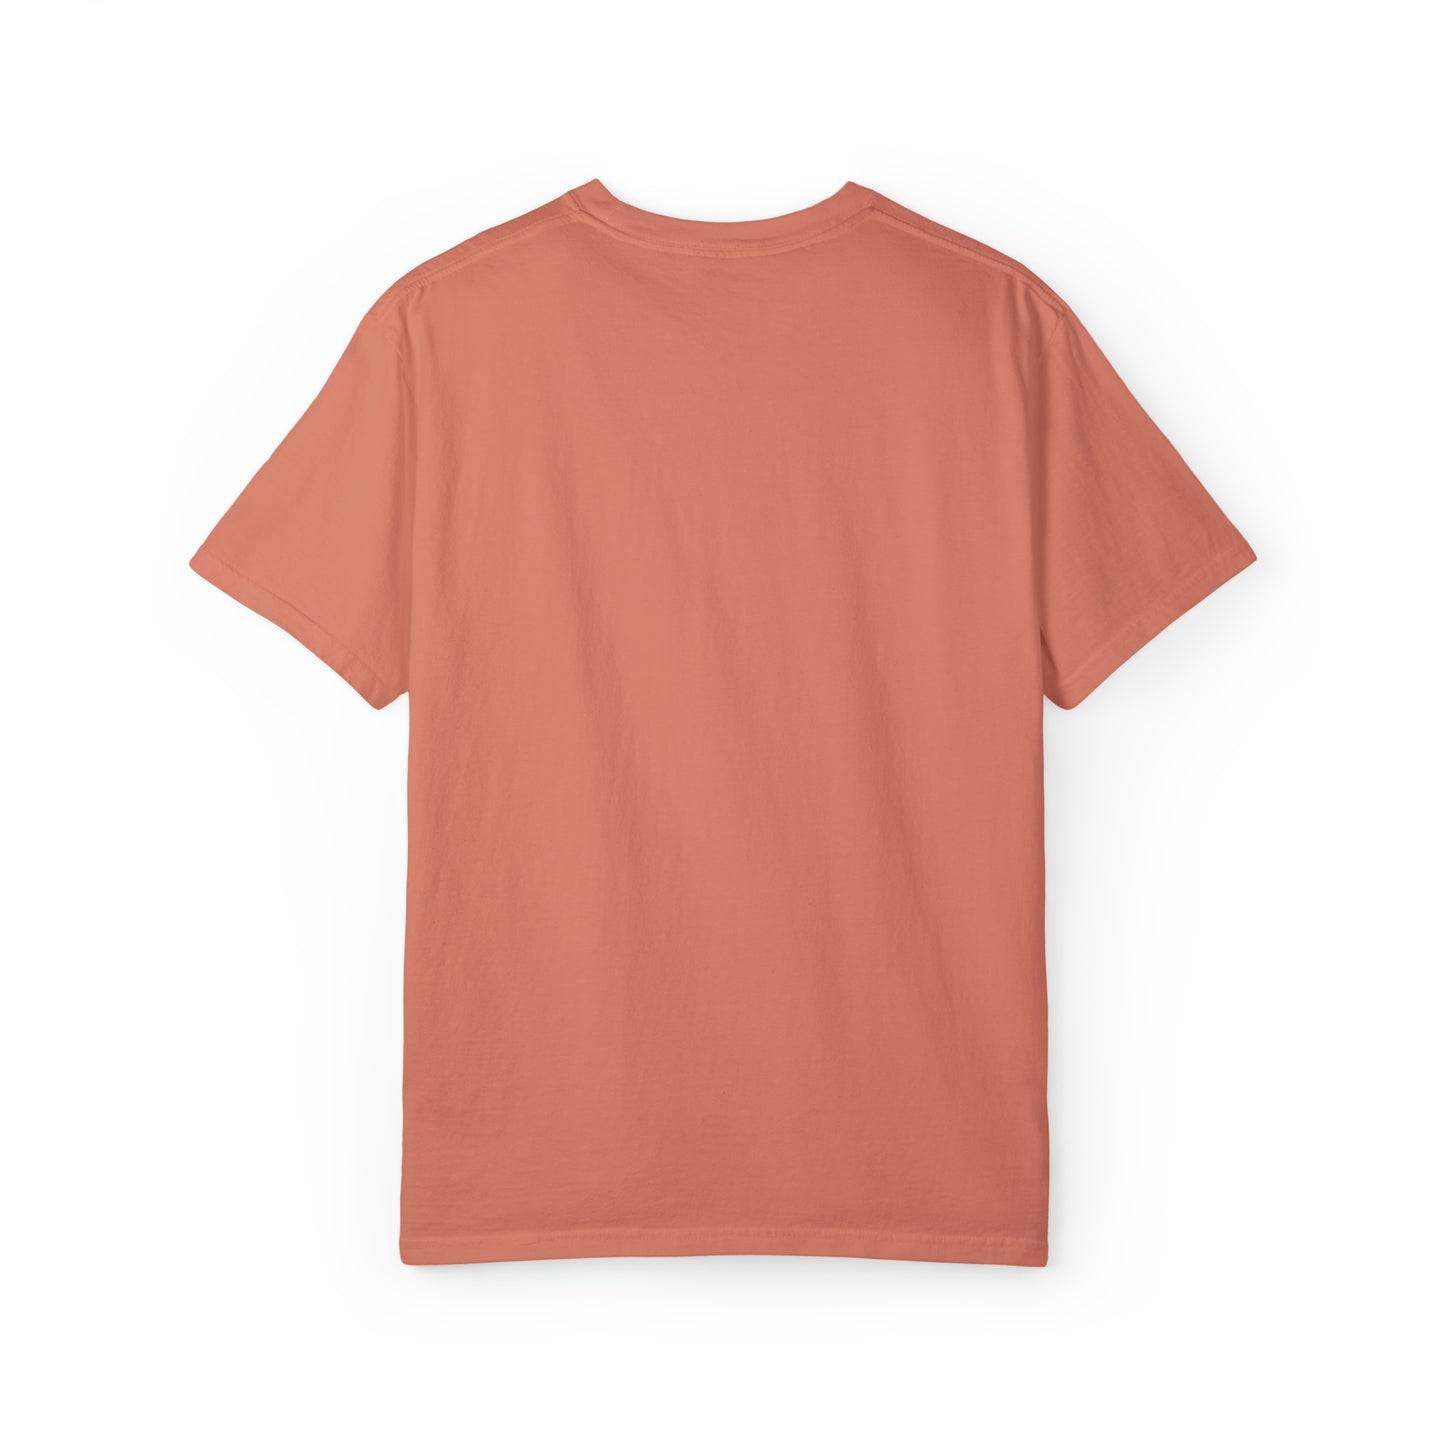 DQU COMFORT COLORS Unisex Garment-Dyed T-shirt